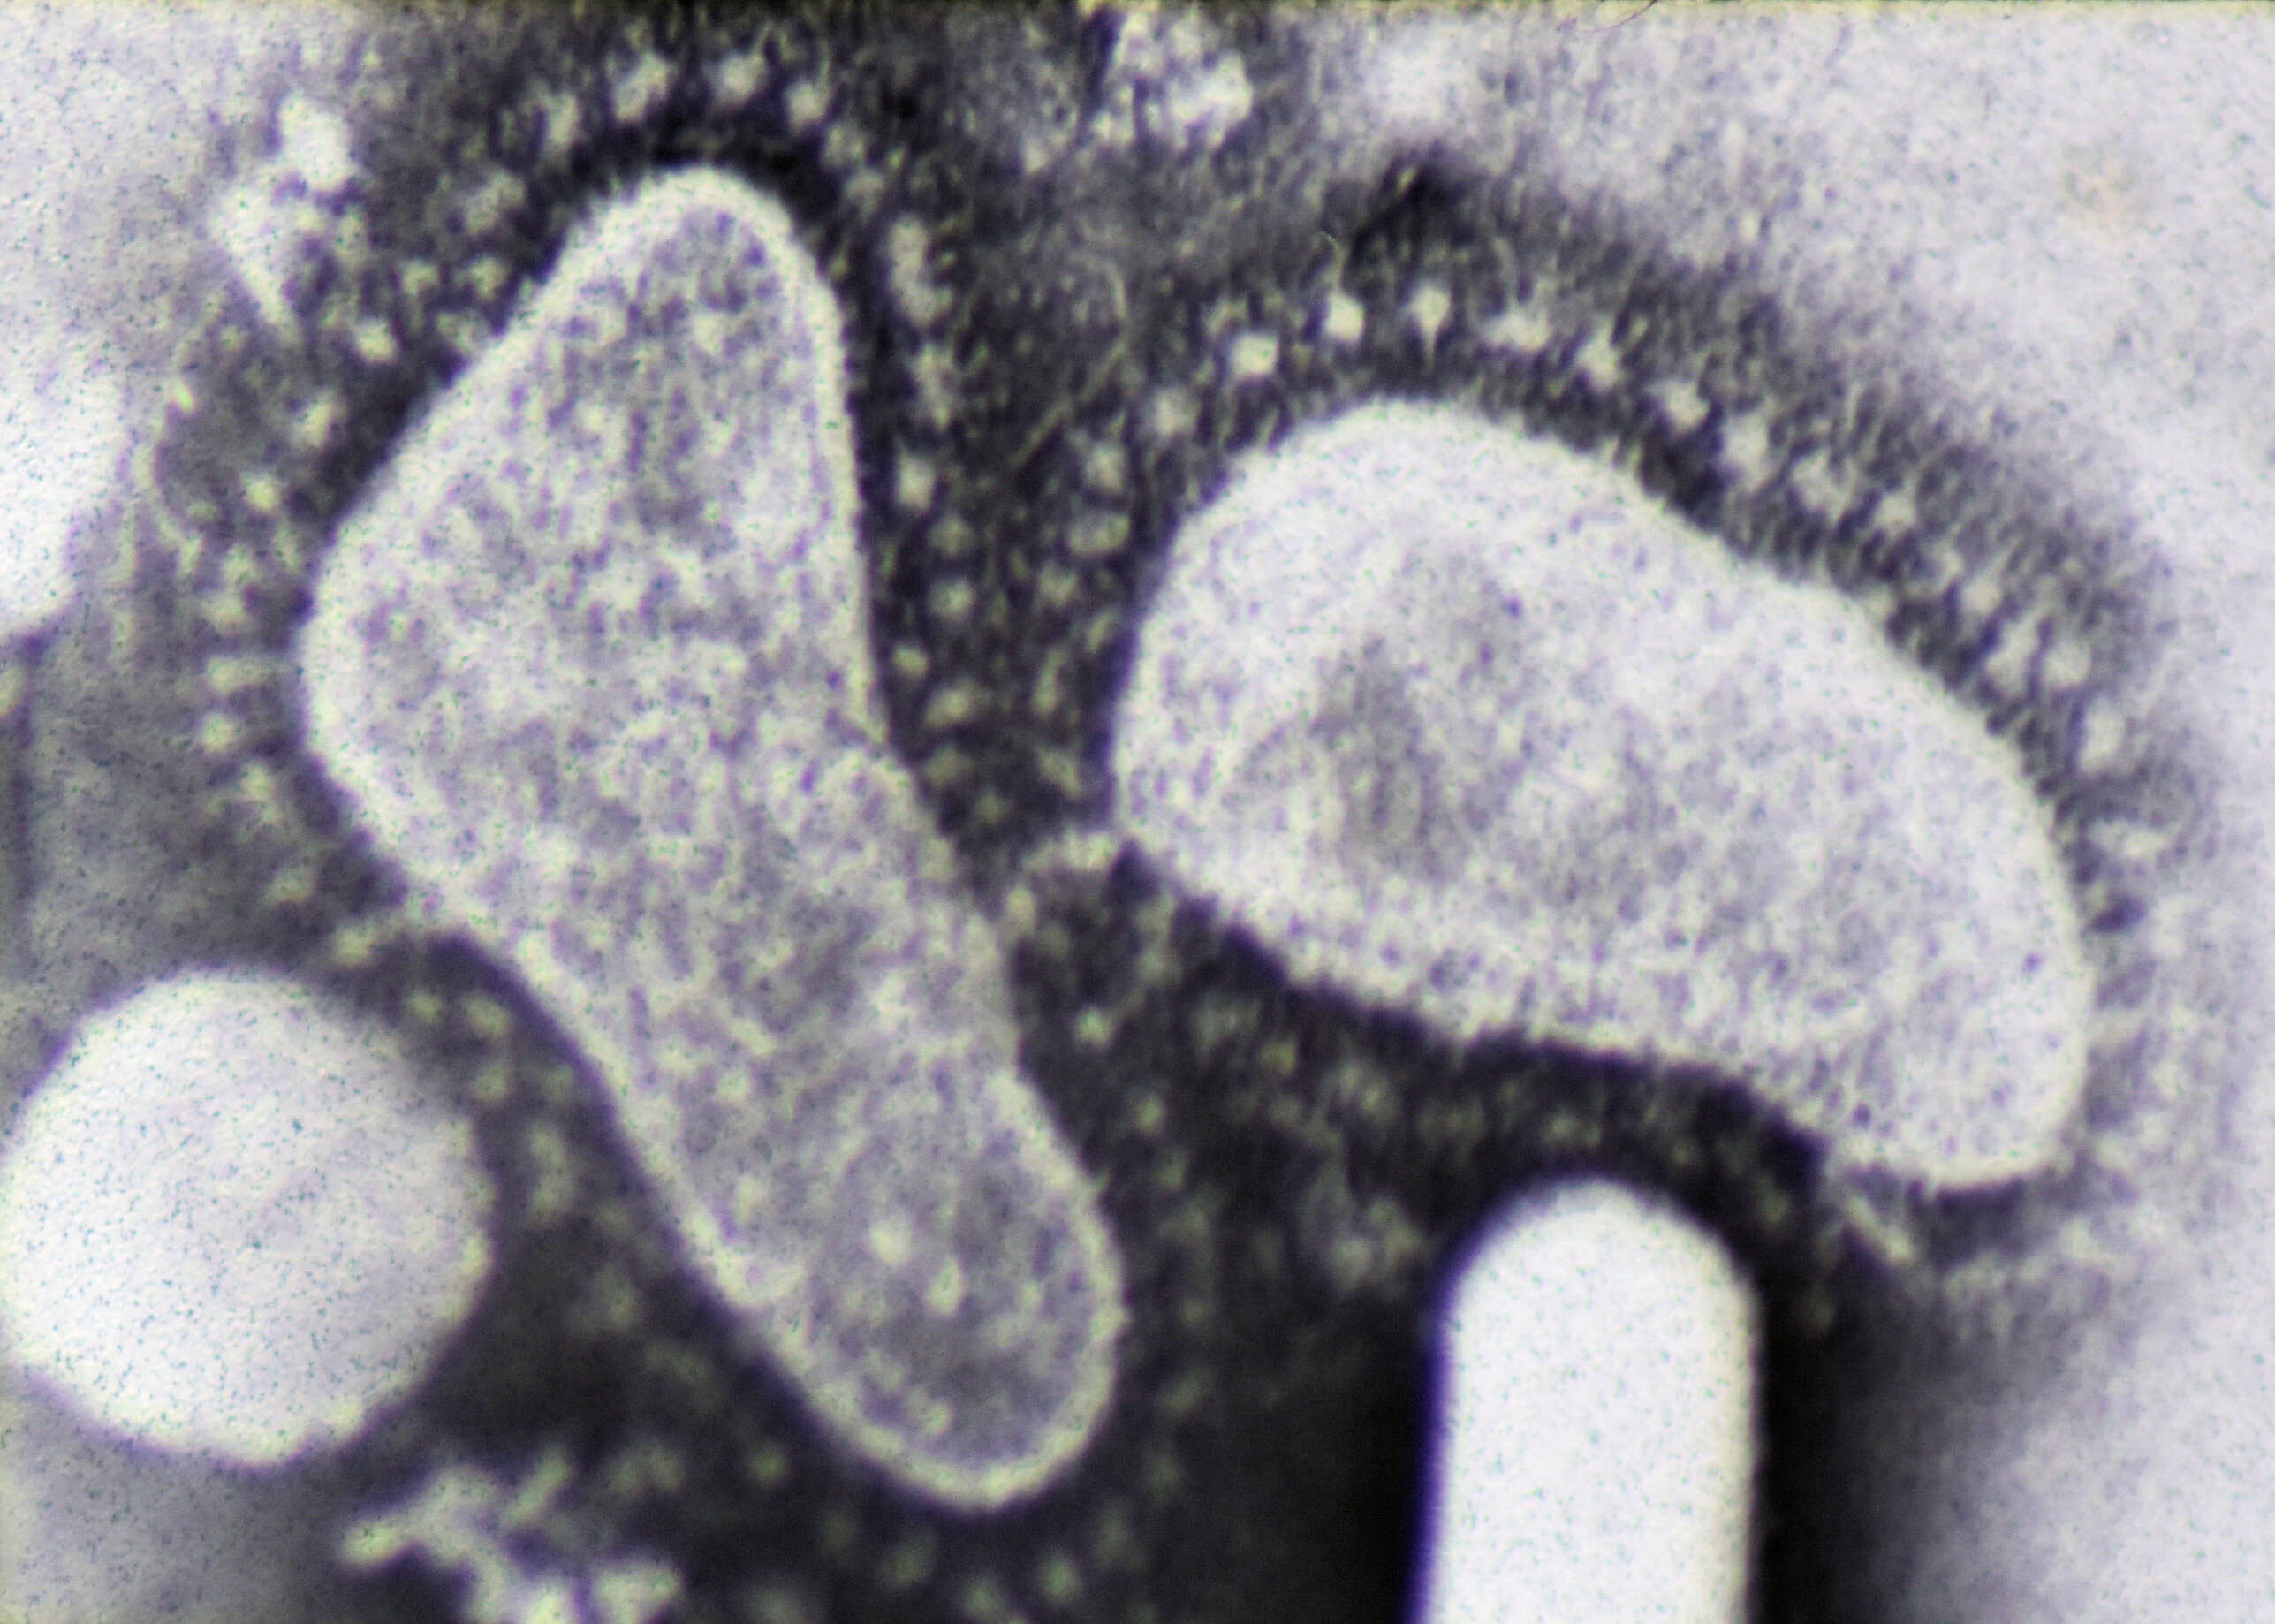 Sivun koronavirukset kuva